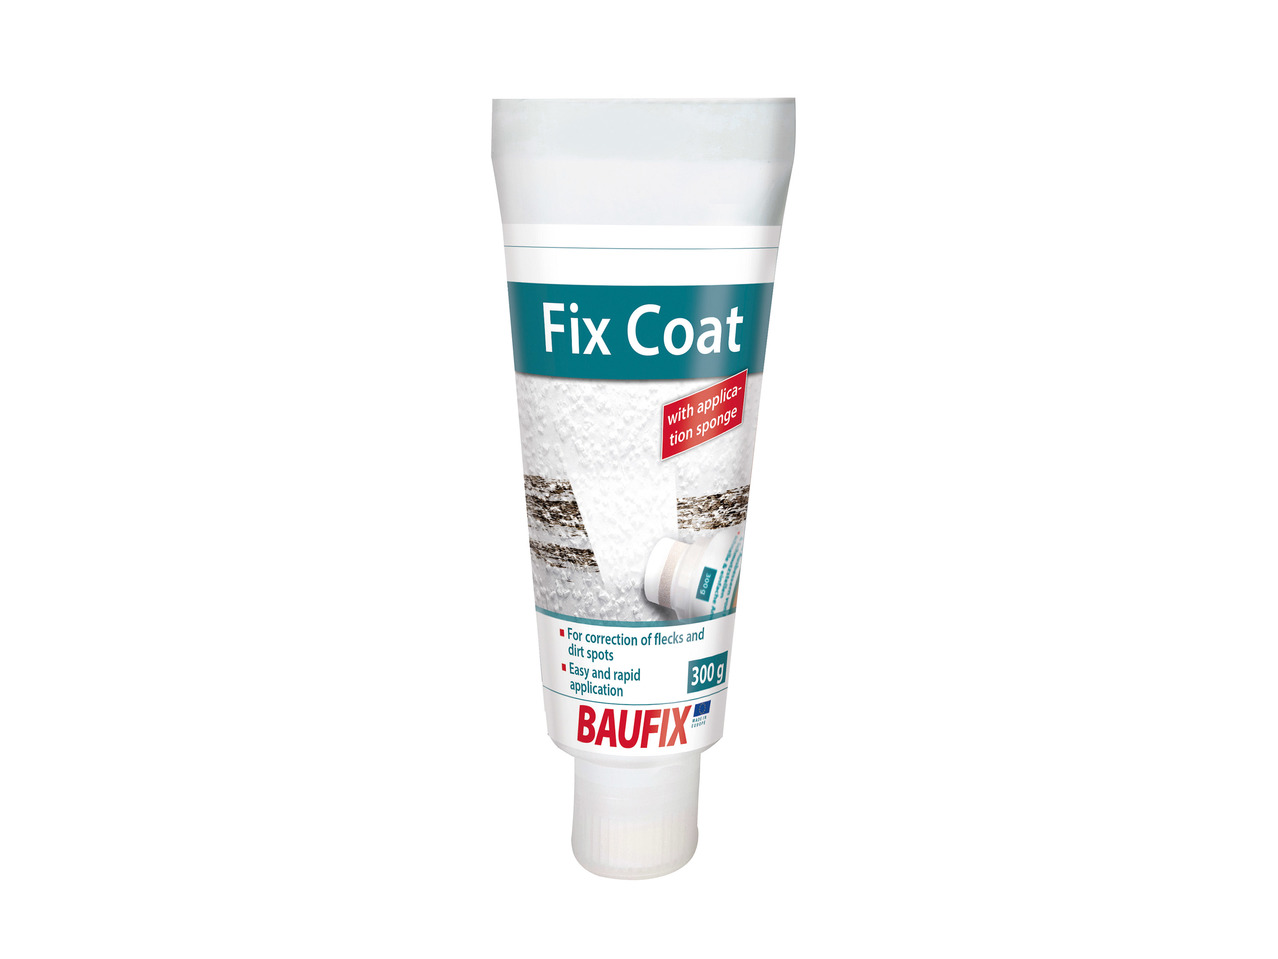 Baufix Sealant or Adhesive1